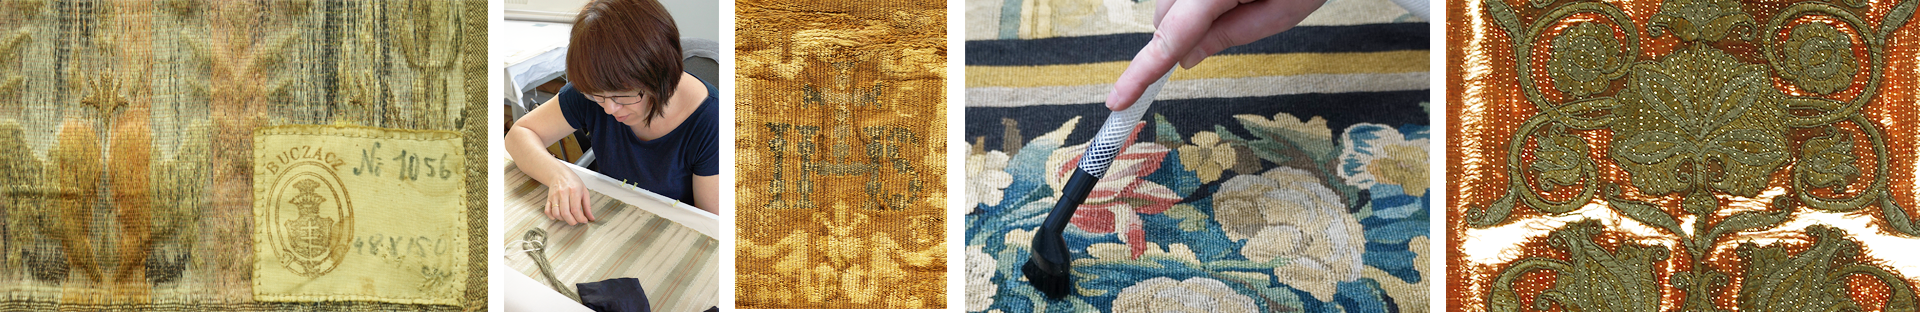 makkon konserwacja tkanin, tkaniny archologiczne, tkaniny liturgiczne